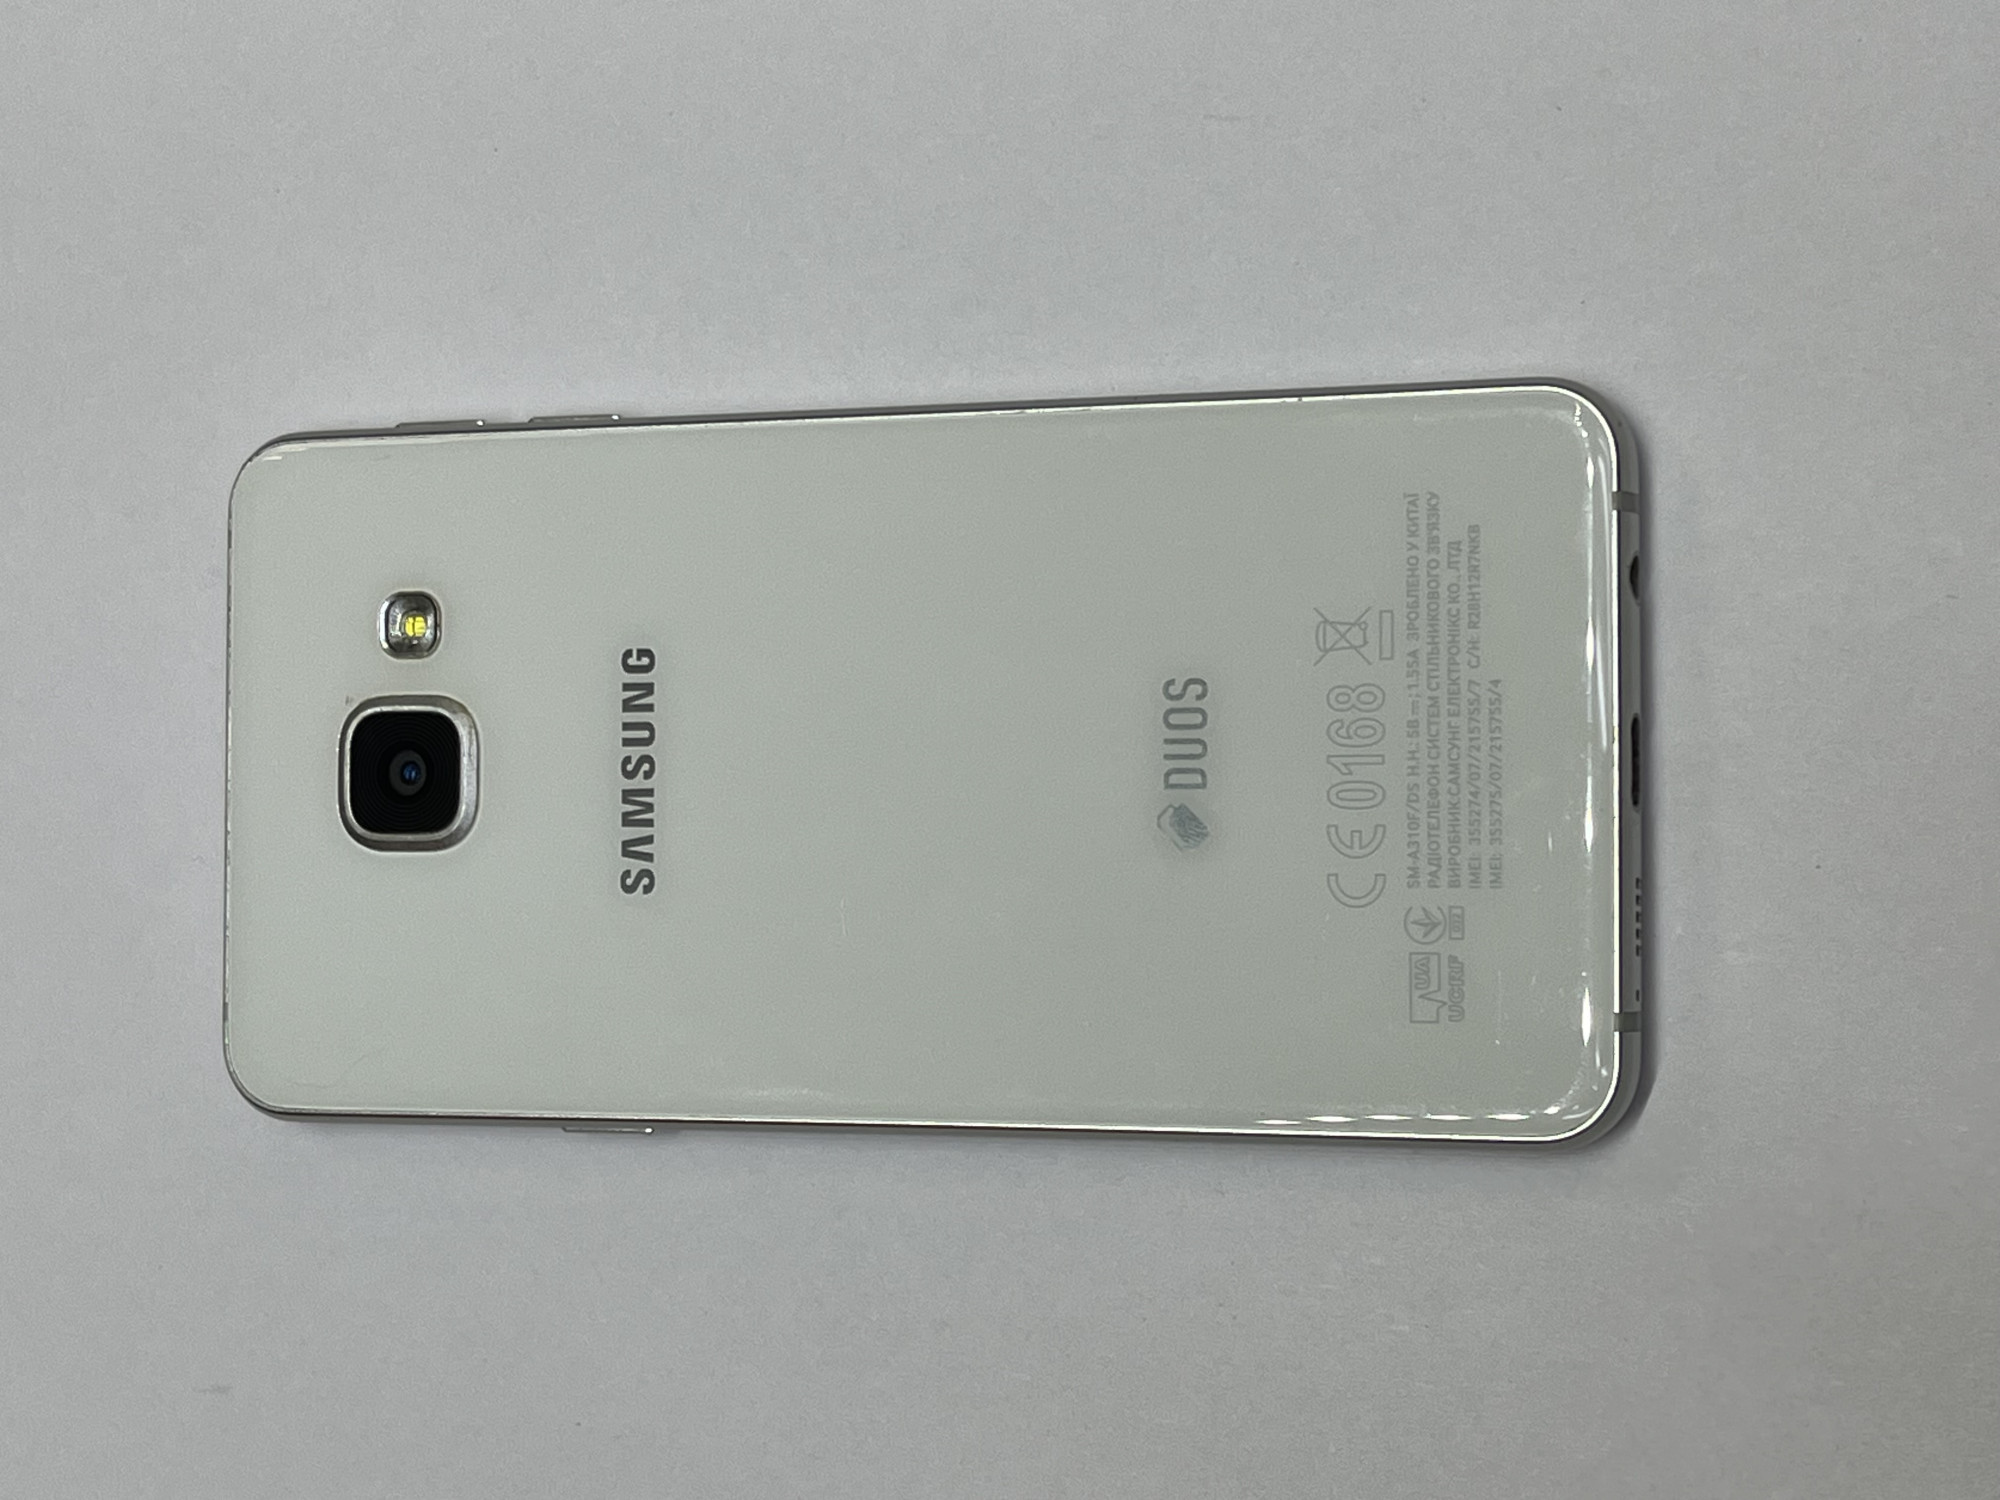 Samsung Galaxy A3 (SM-A310F) 2016 1/16Gb 6